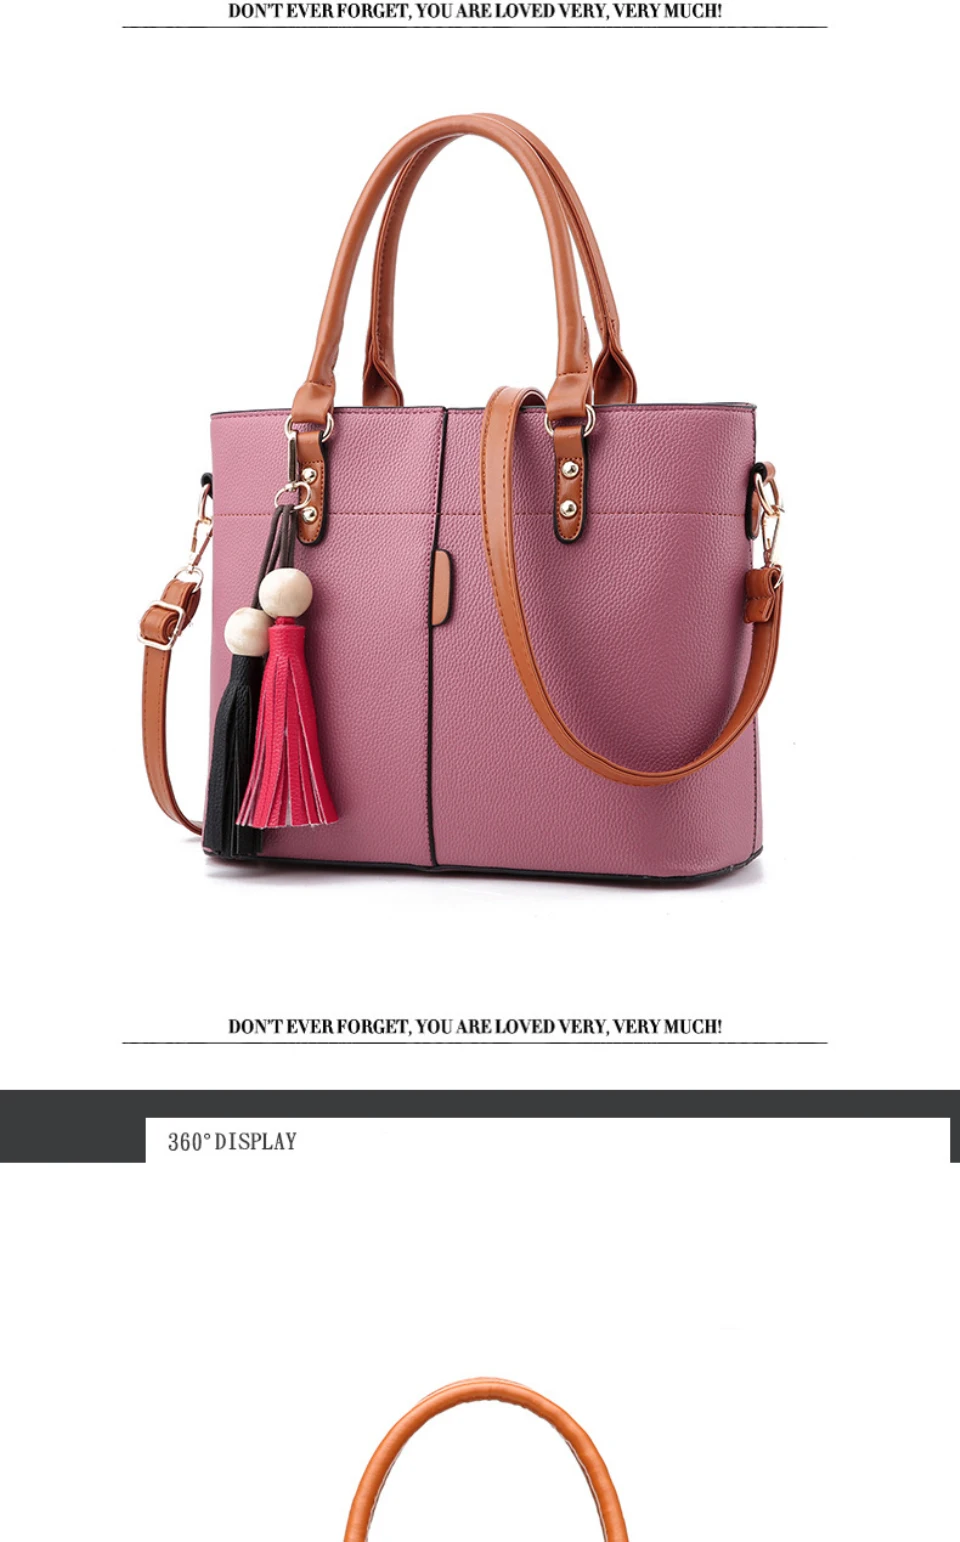 FGJLLOGJGSO Новая модная сумка на плечо женская сумка для женщин Роскошные сумки женские сумки дизайнерские сумки через плечо